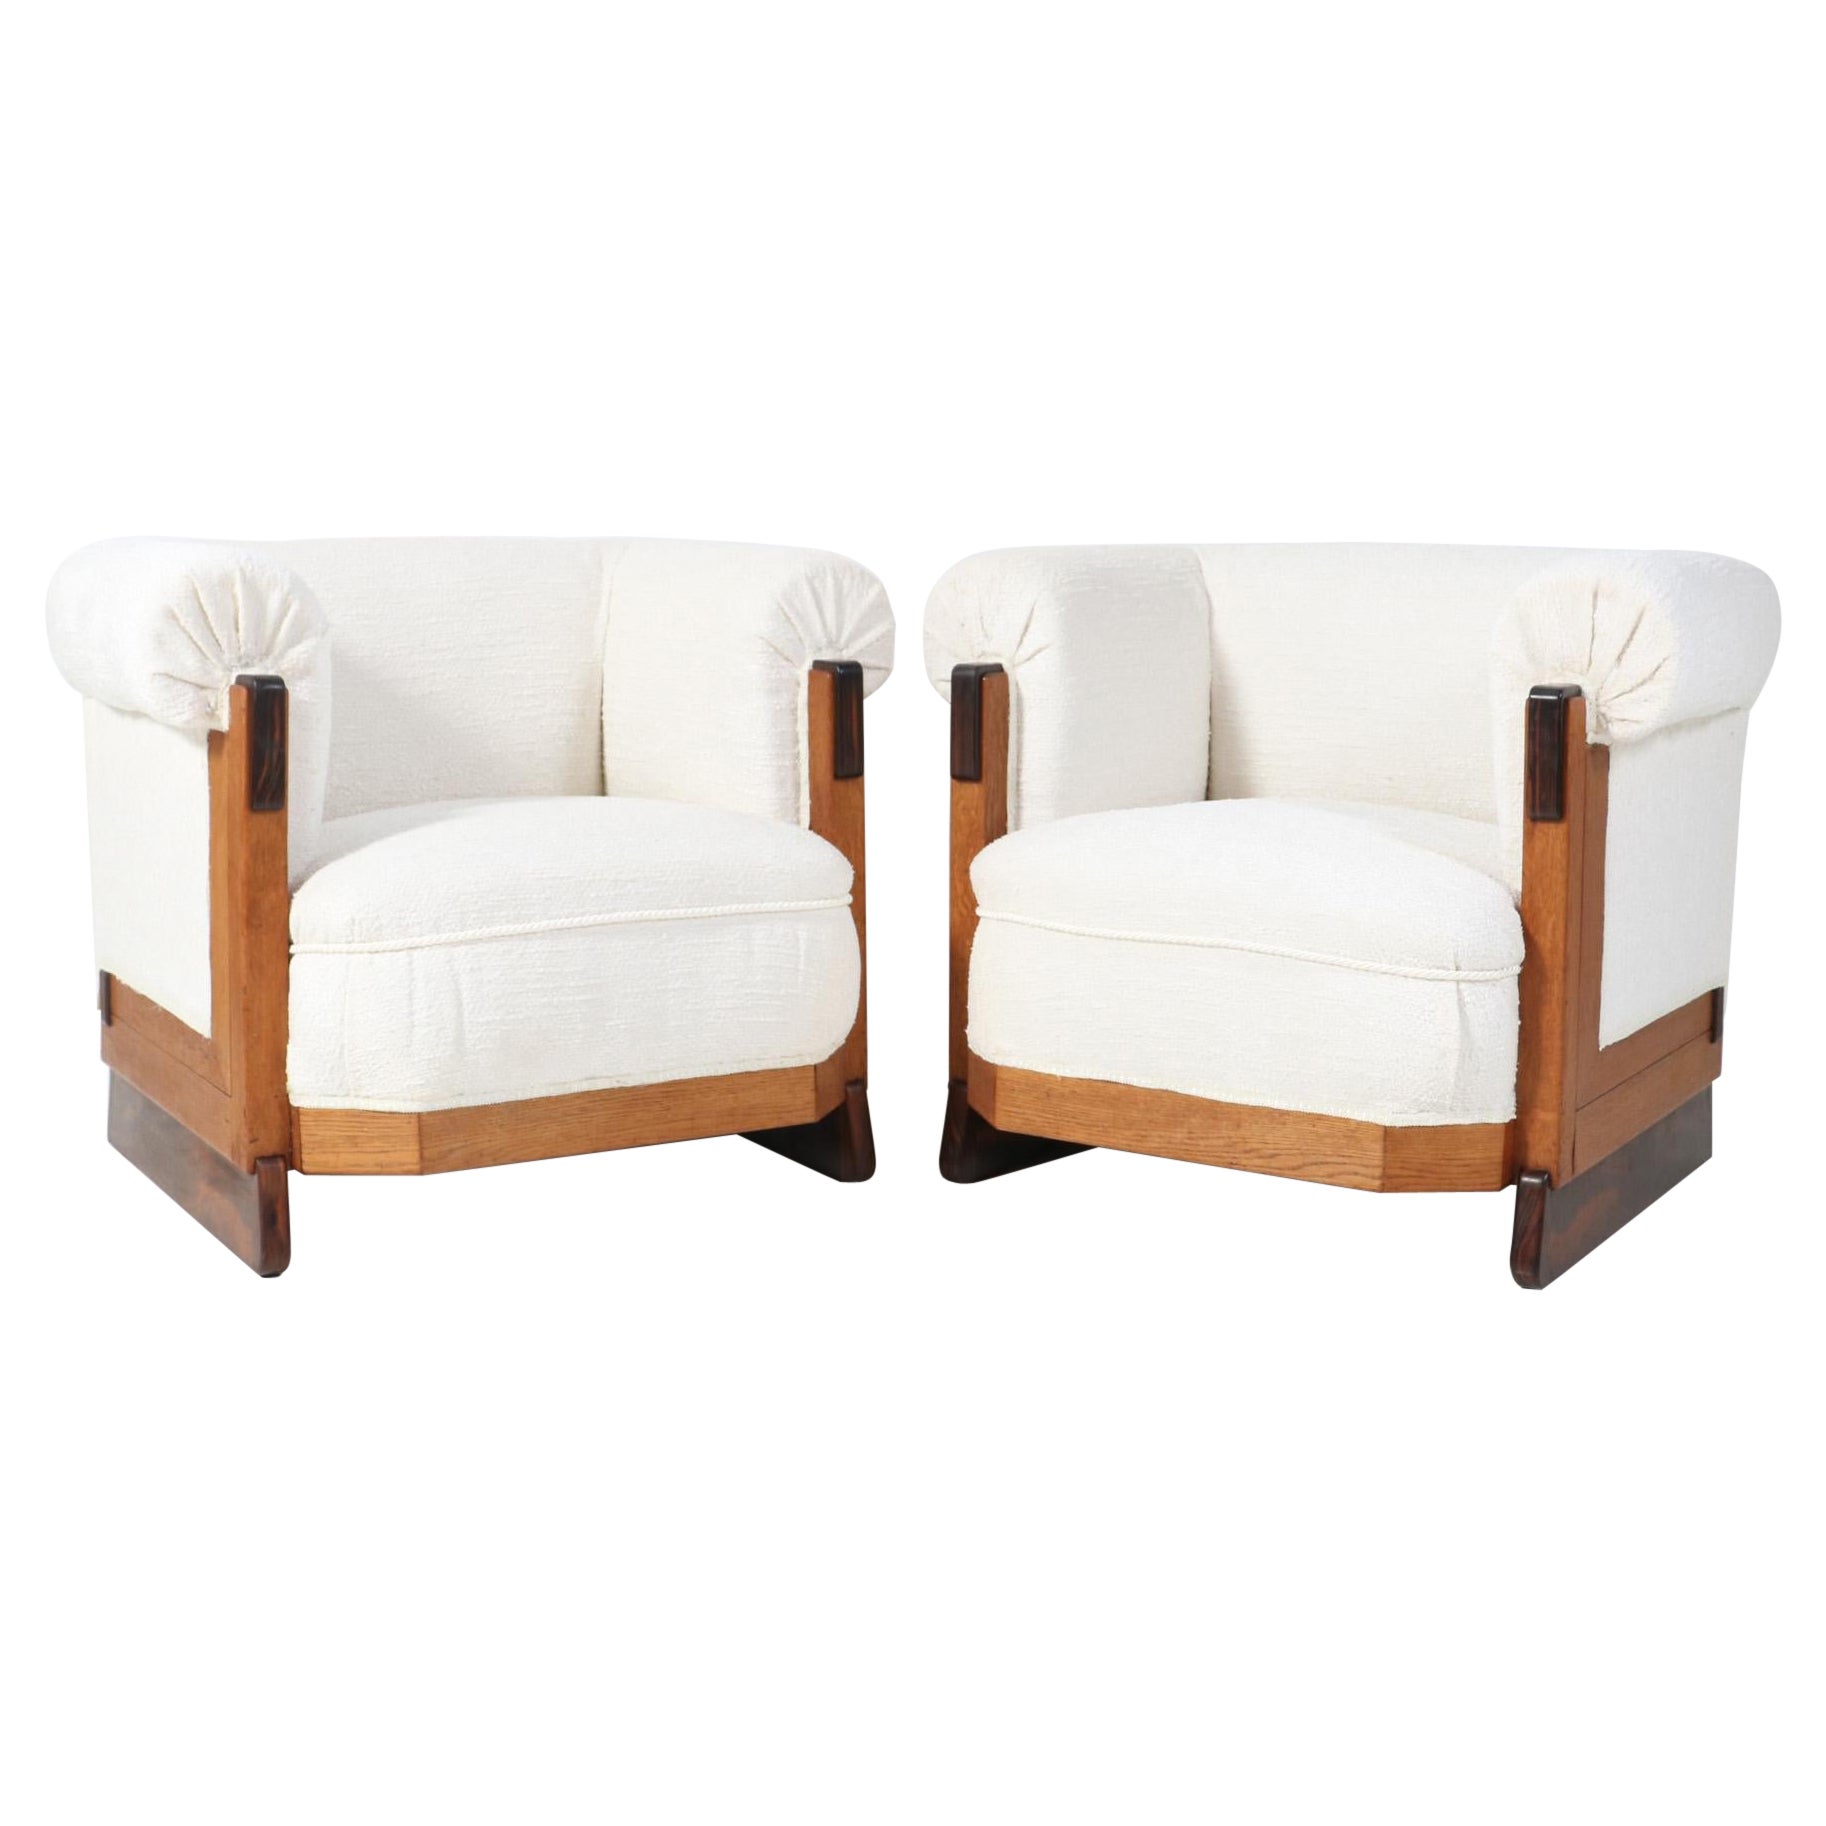 Two Oak Art Deco Modernist Lounge Chairs in Bouclé by Anton Lucas Leiden, 1920s